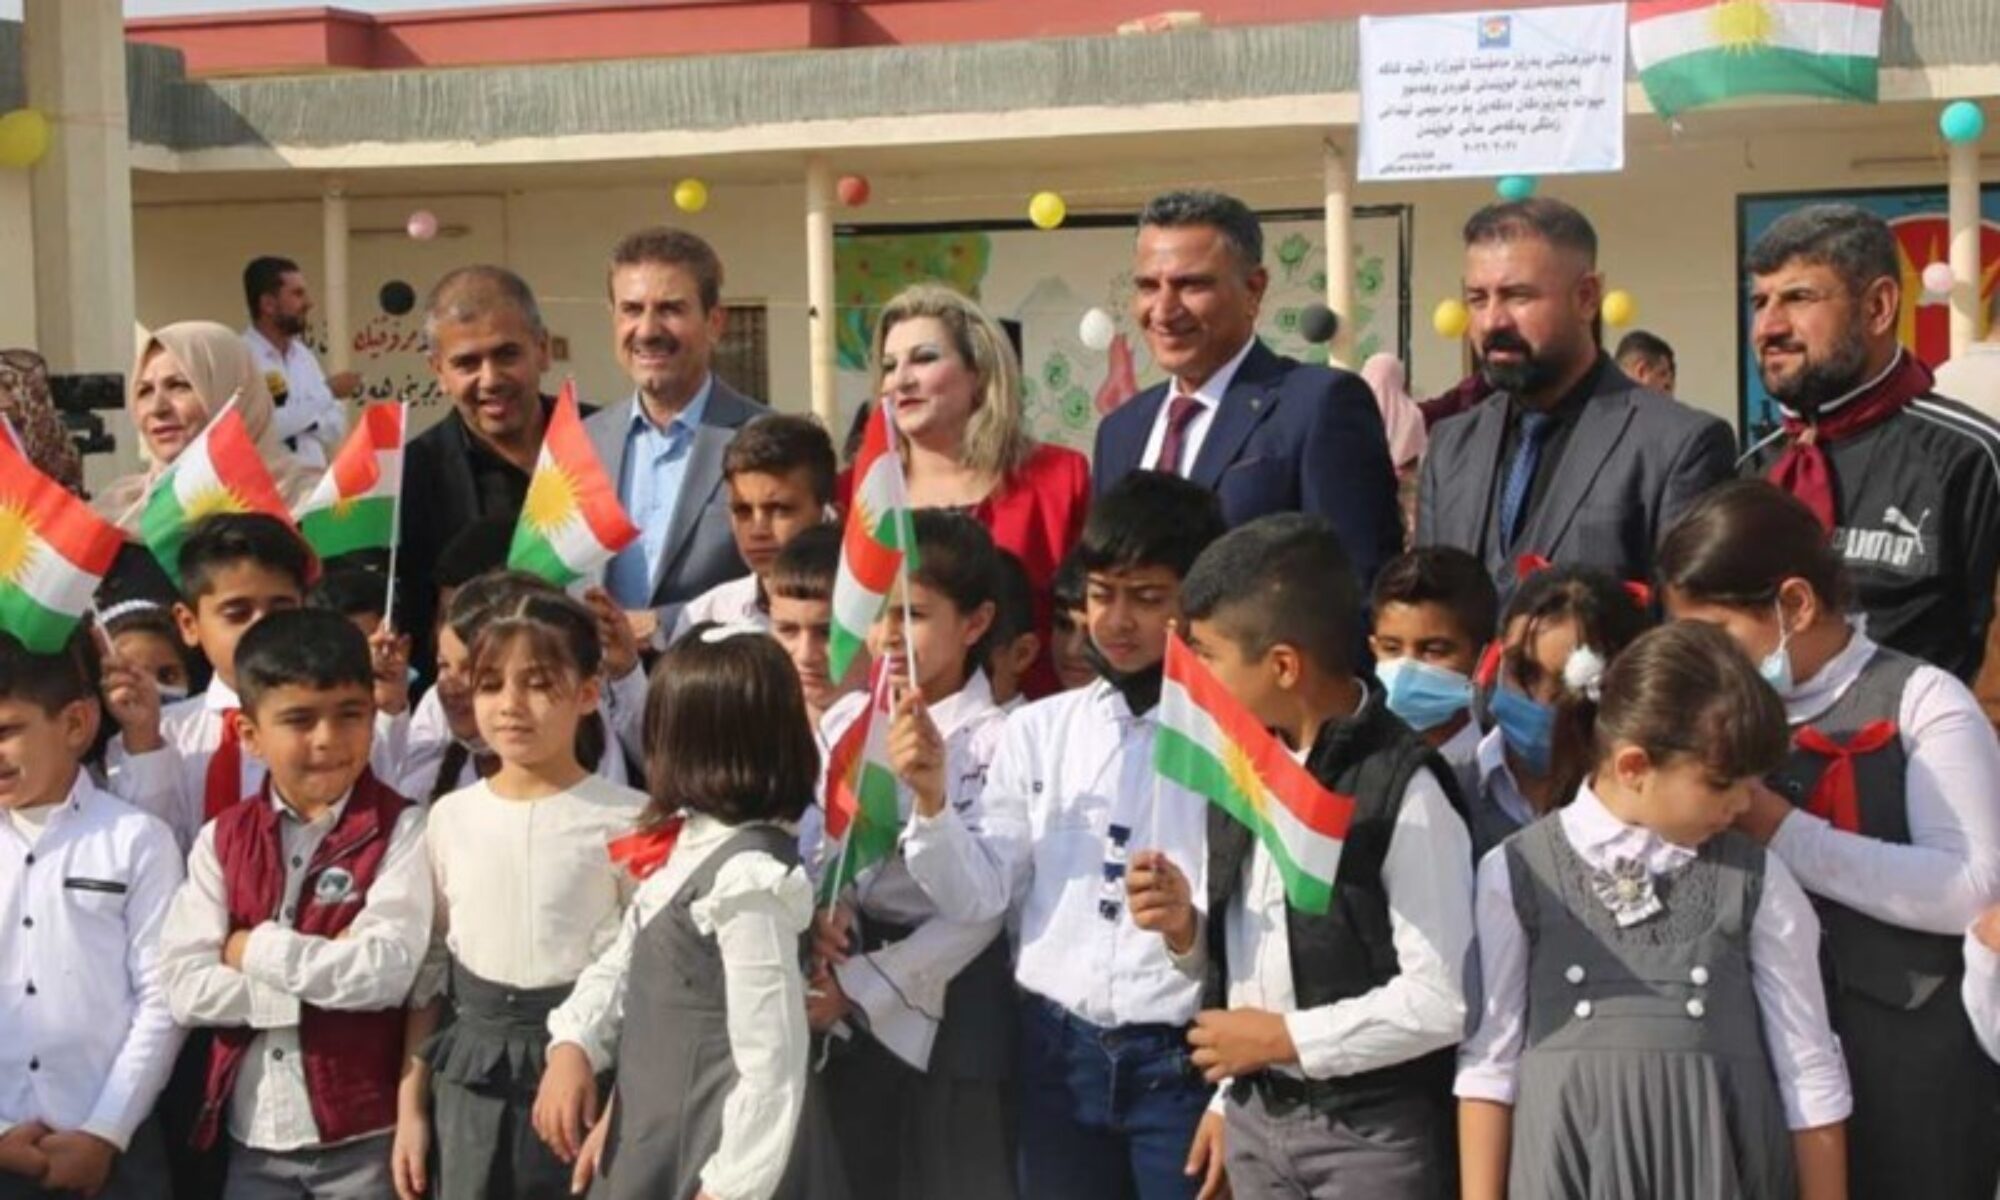 Kürdistan idaresi dışındaki Kürtçe eğitimın tüm masrafları Kürdistan Bölgesi tarafından karşılanıyor Kerkük, Xanaqin, Şengal